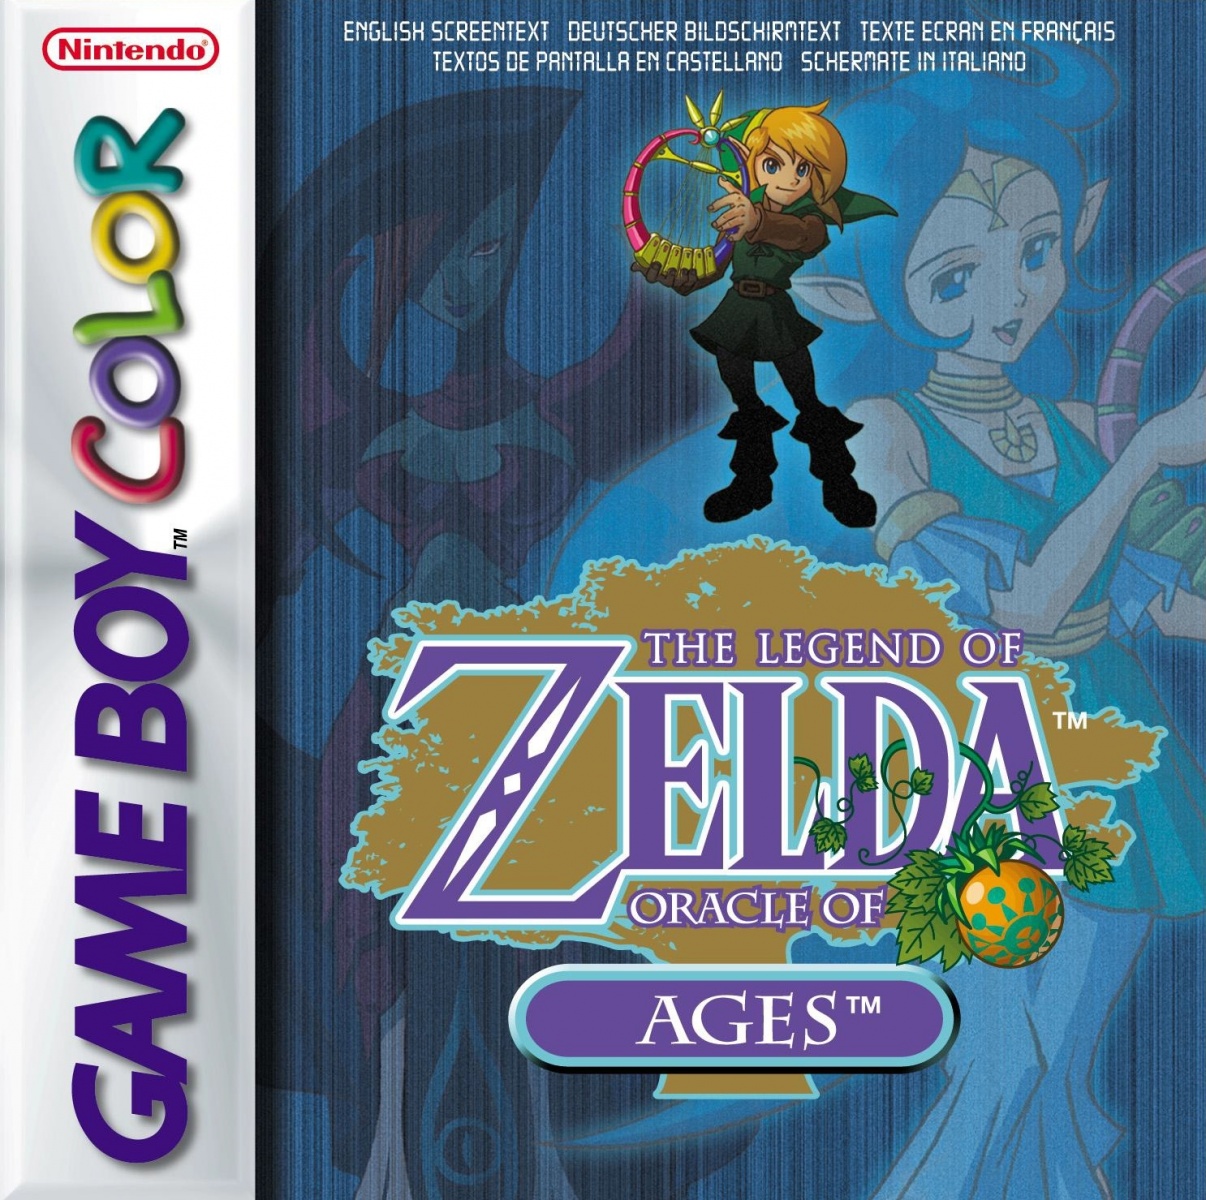 Galería: 30 años de portadas de The Legend of Zelda - MeriStation